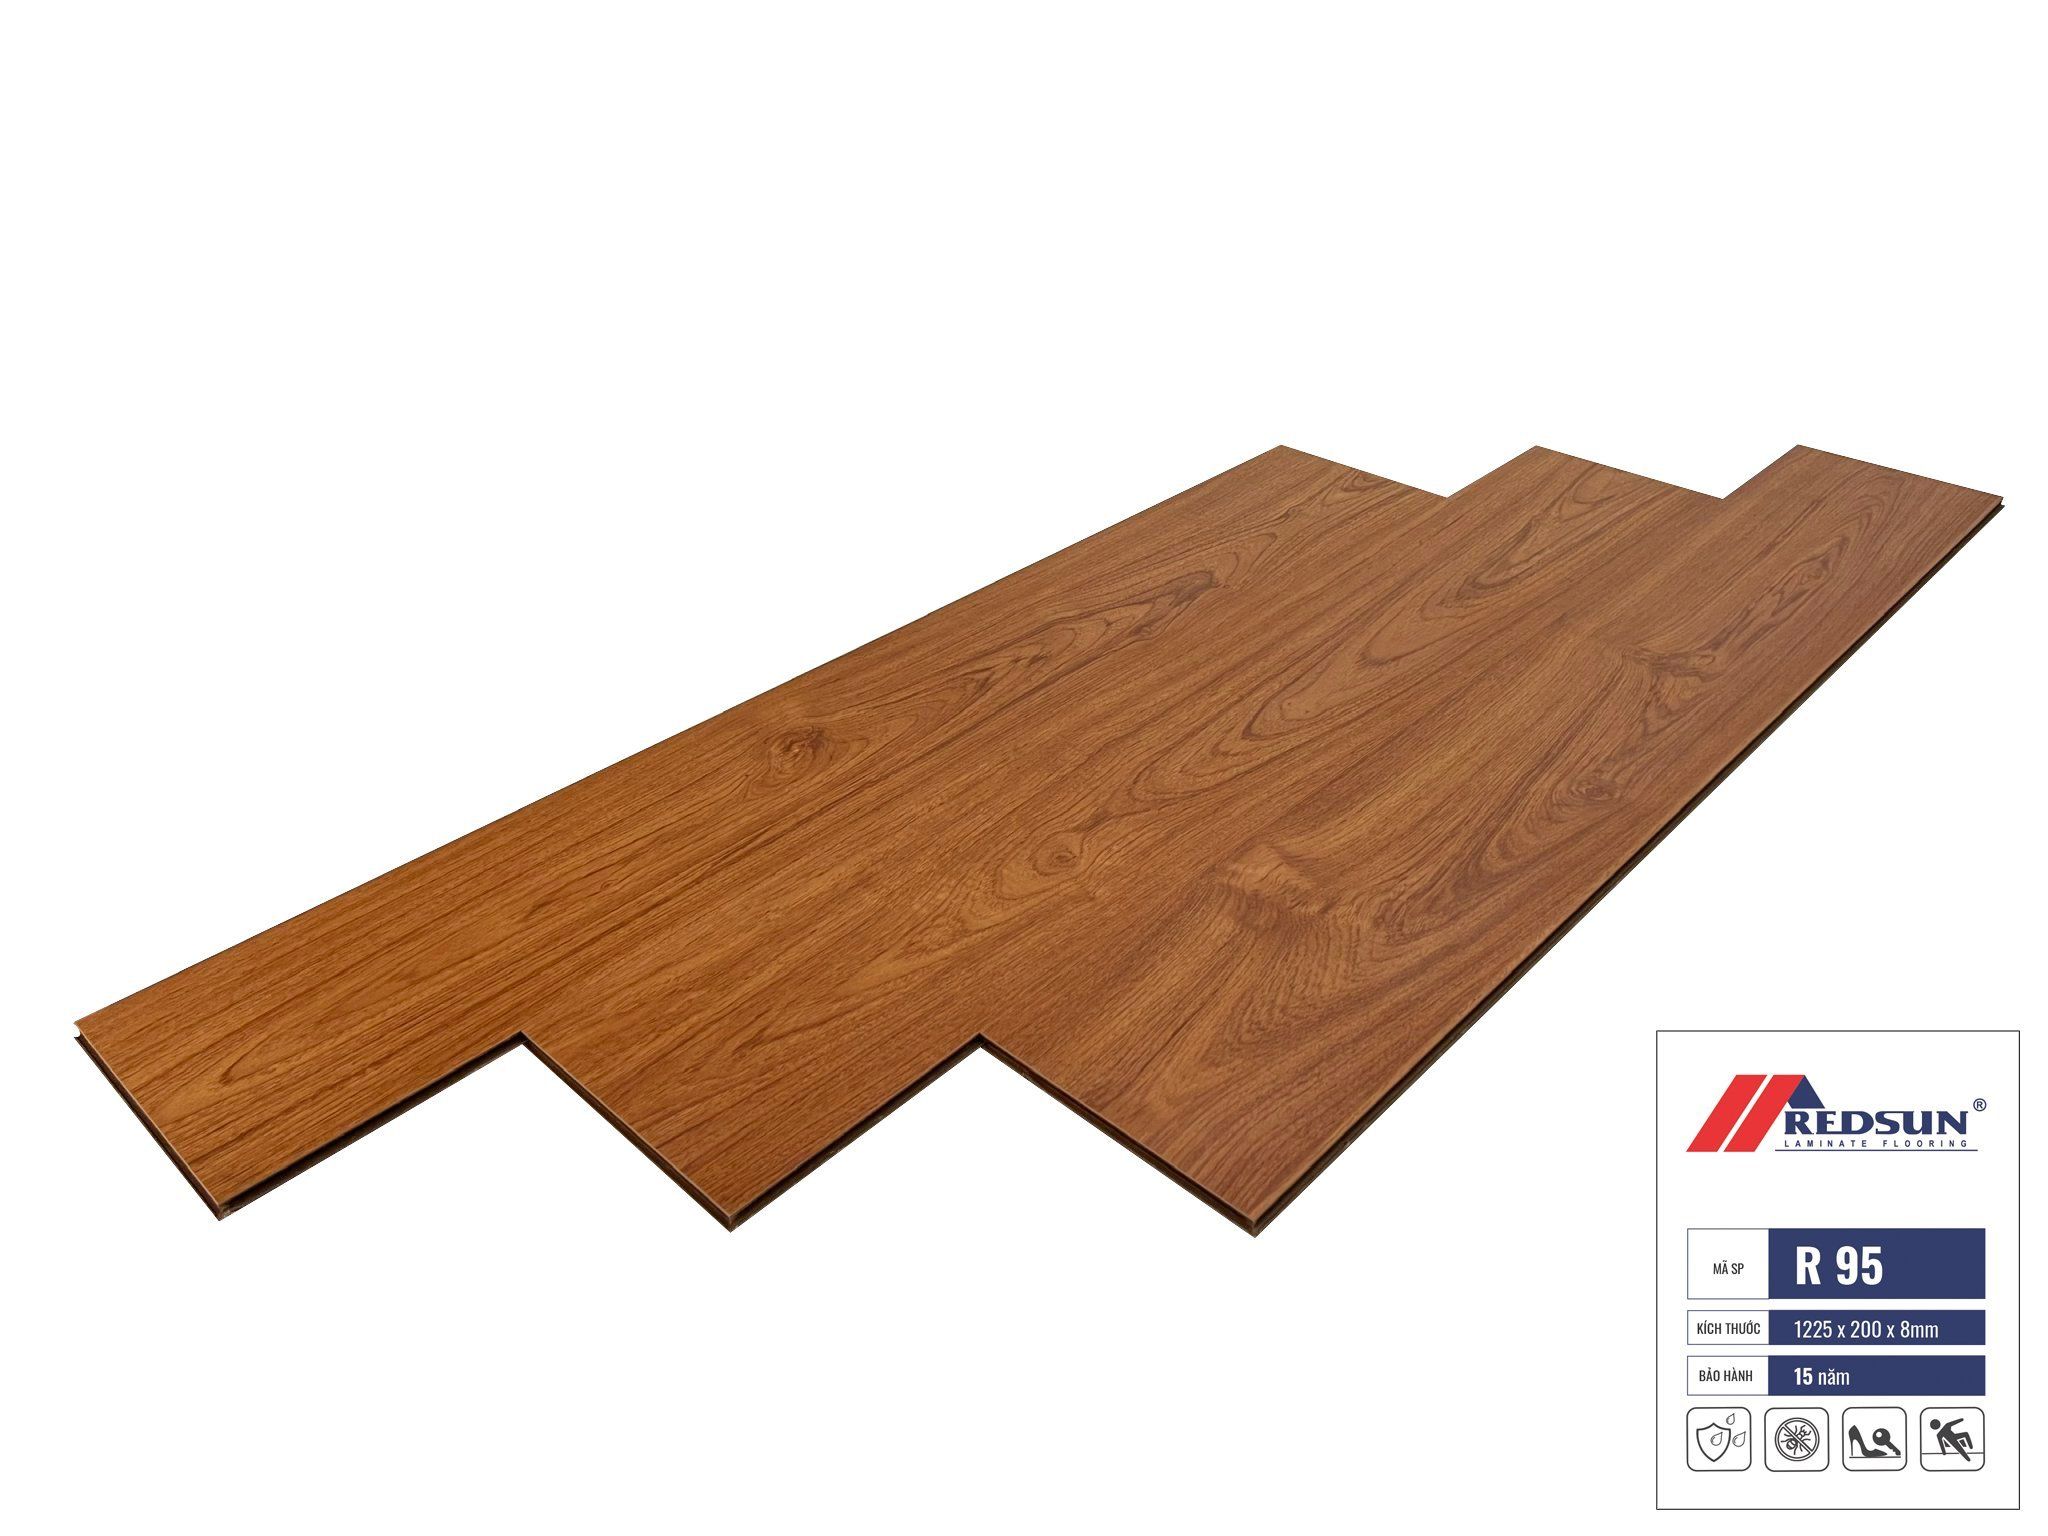  Sàn gỗ Redsun – R95 